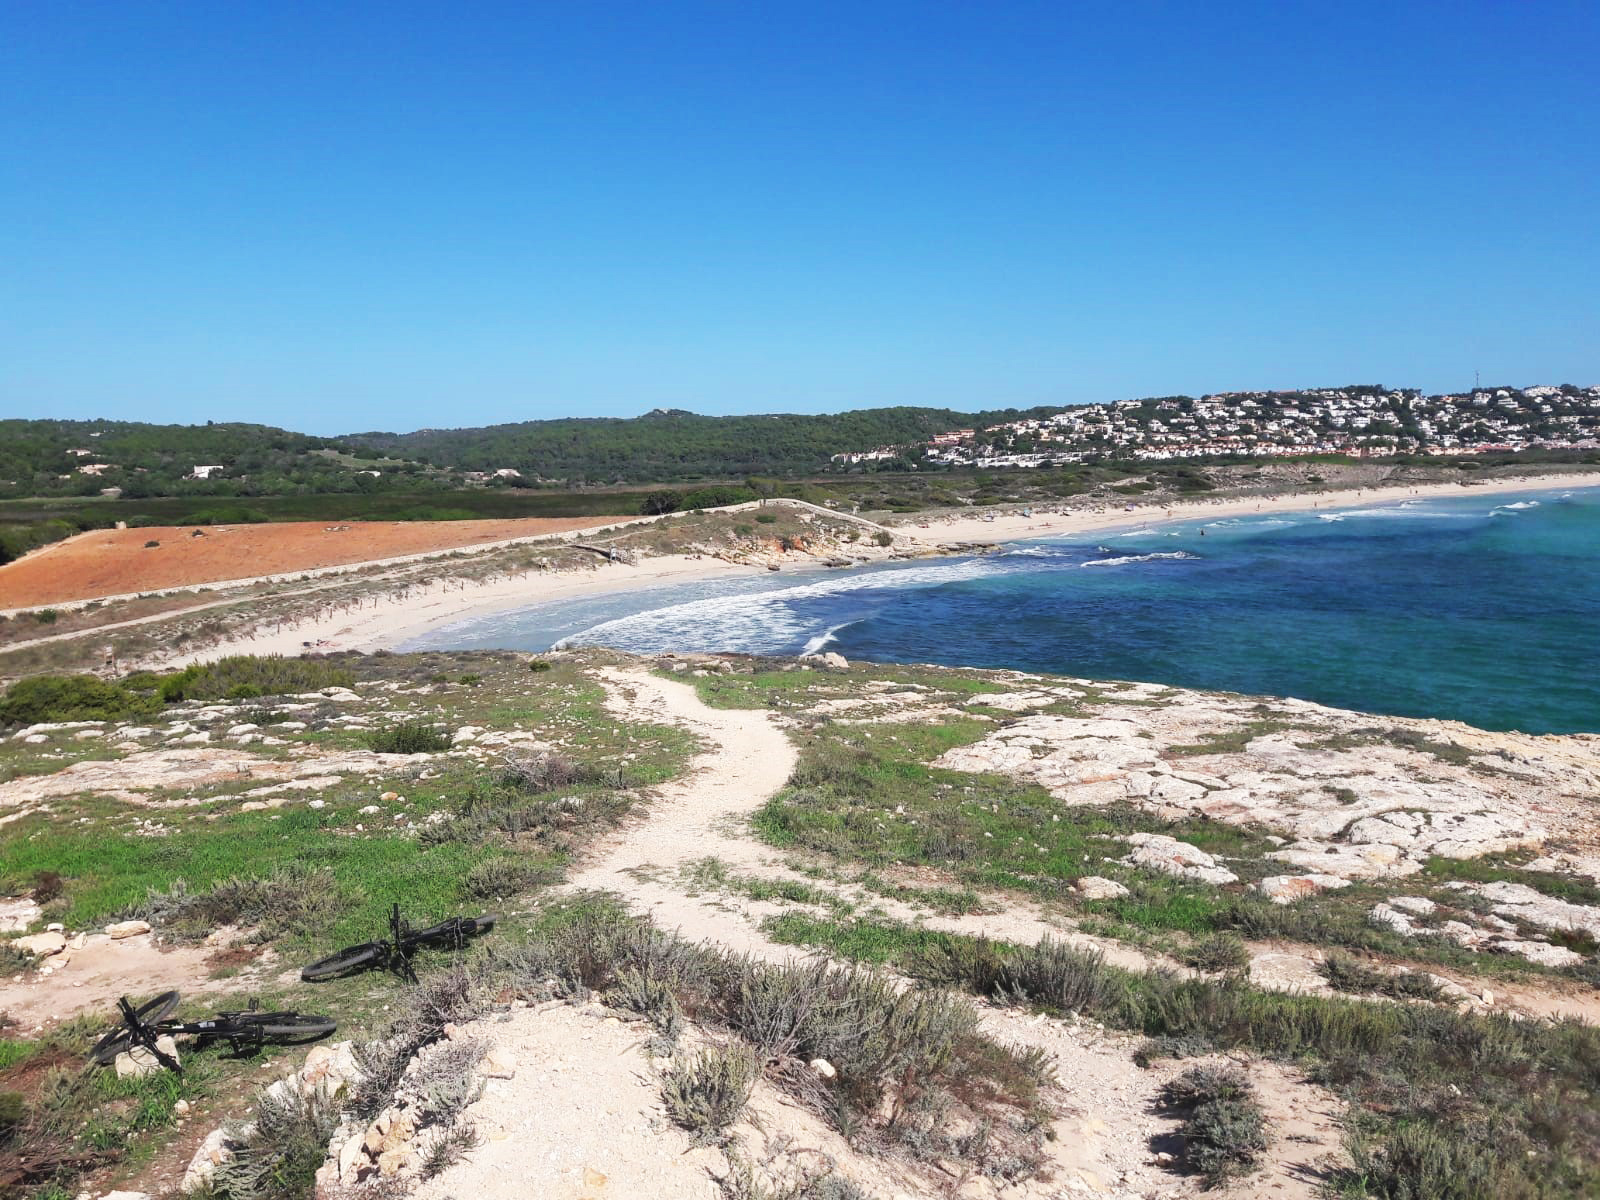 South coast views in Menorca